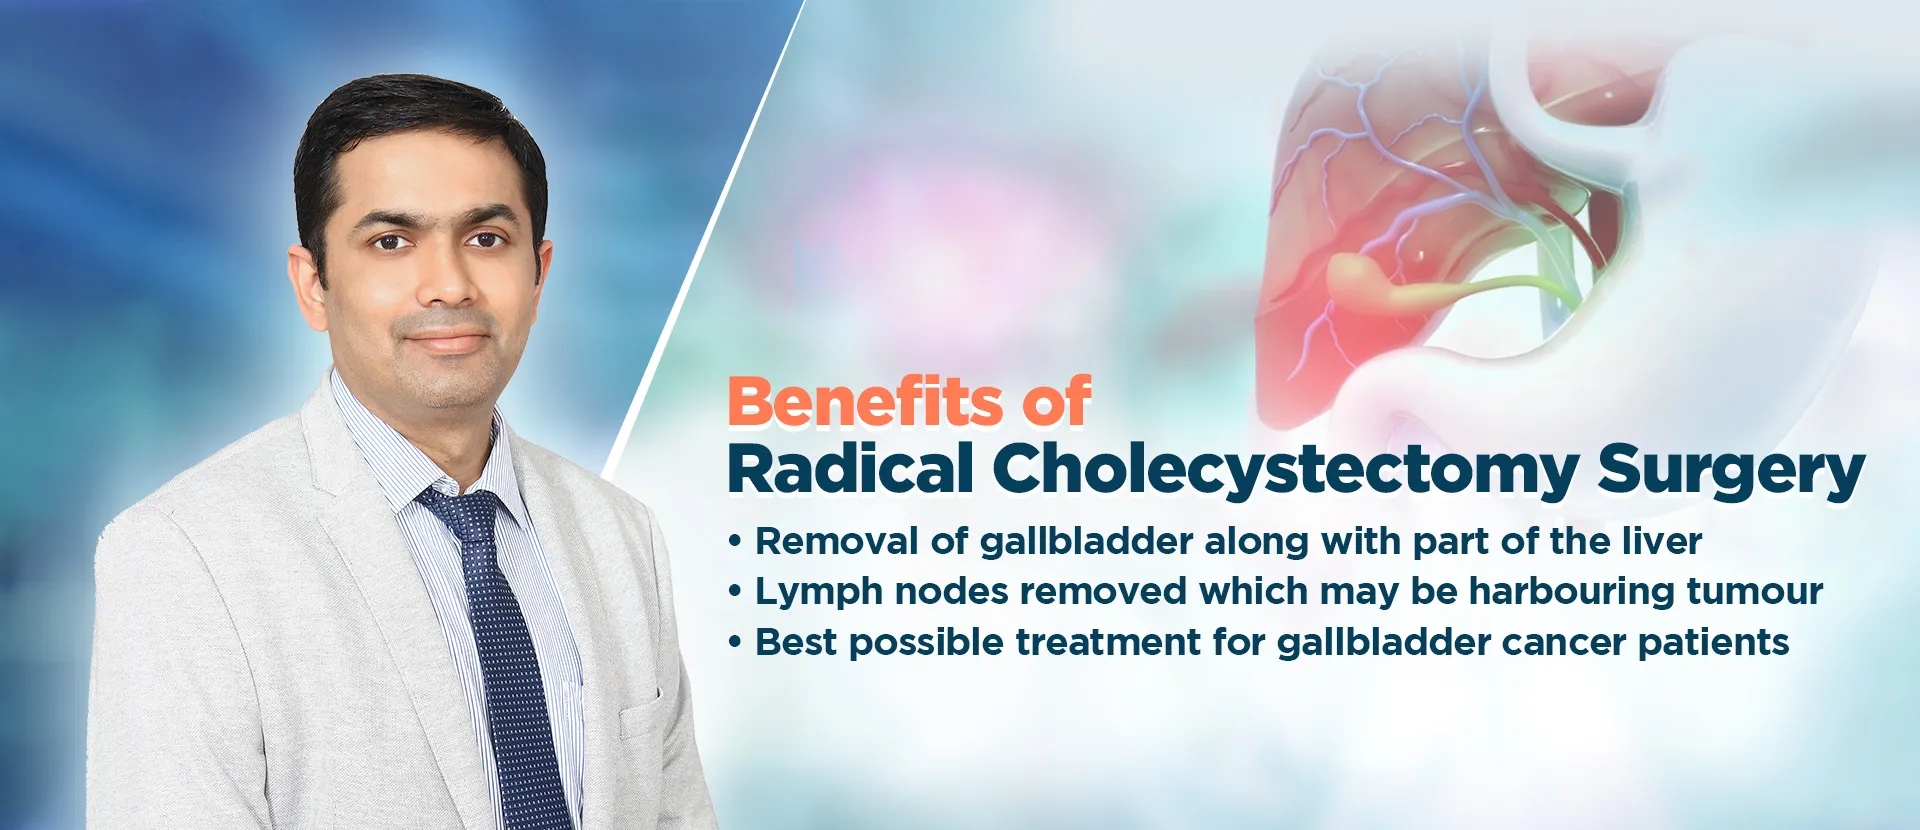 Benefits of Radical Cholecystectomy Surgery